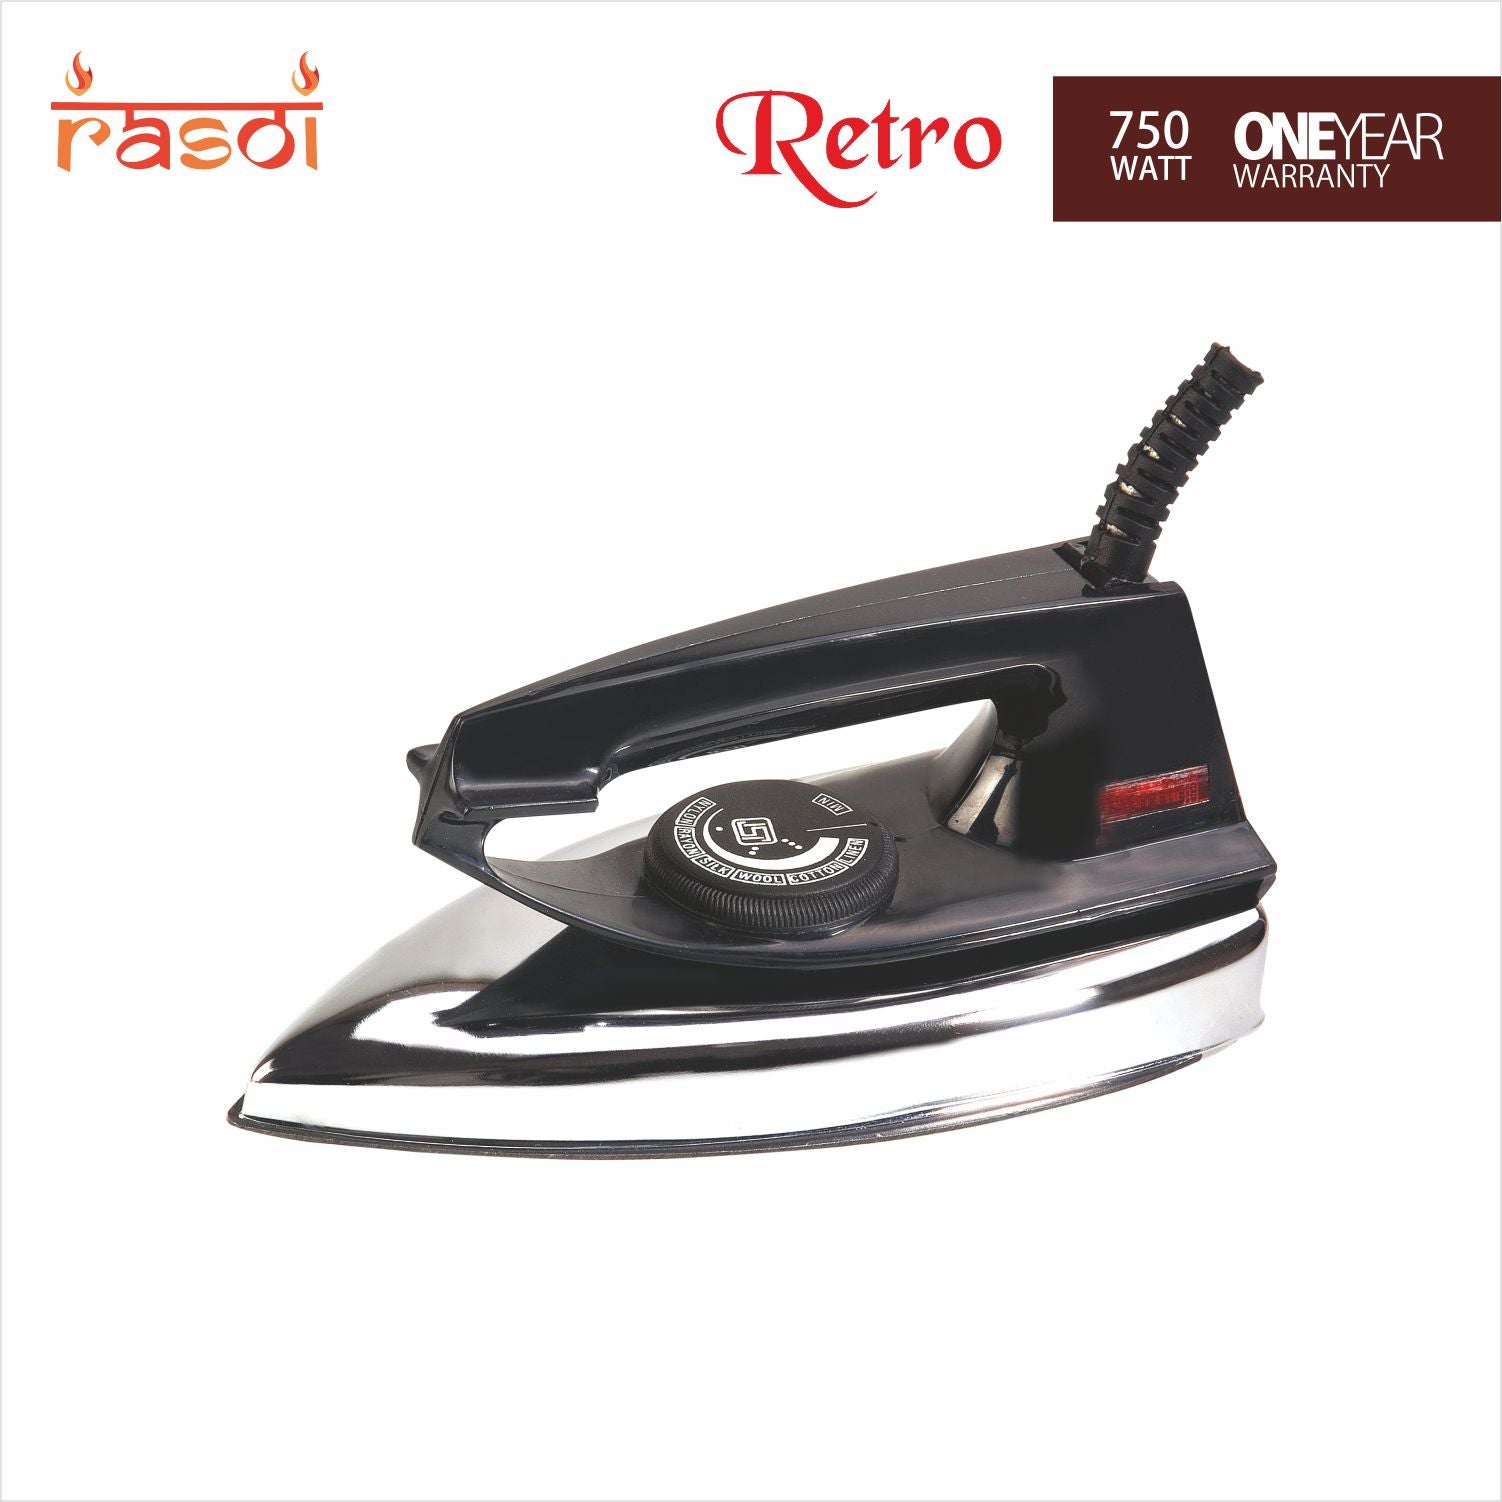 Rasoi Retro 750 W Iron (Black & Silver)